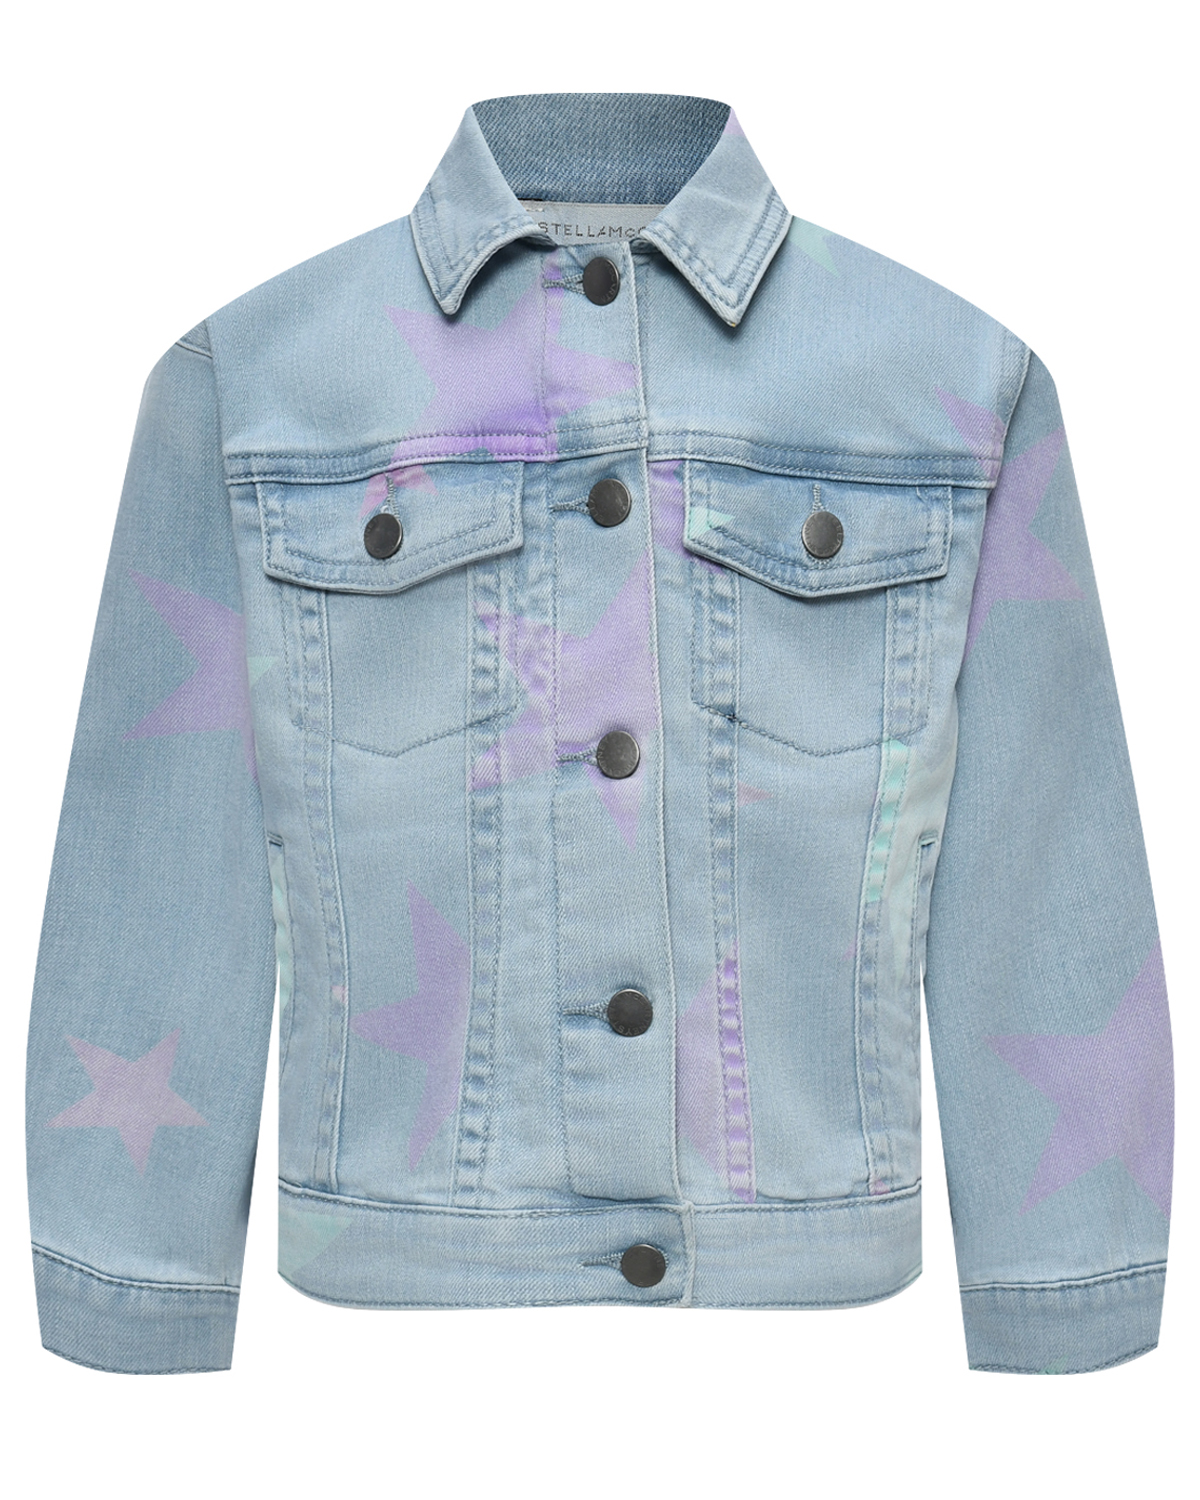 Джинсовая куртка с принтом "звезды" Stella McCartney, размер 110, цвет голубой